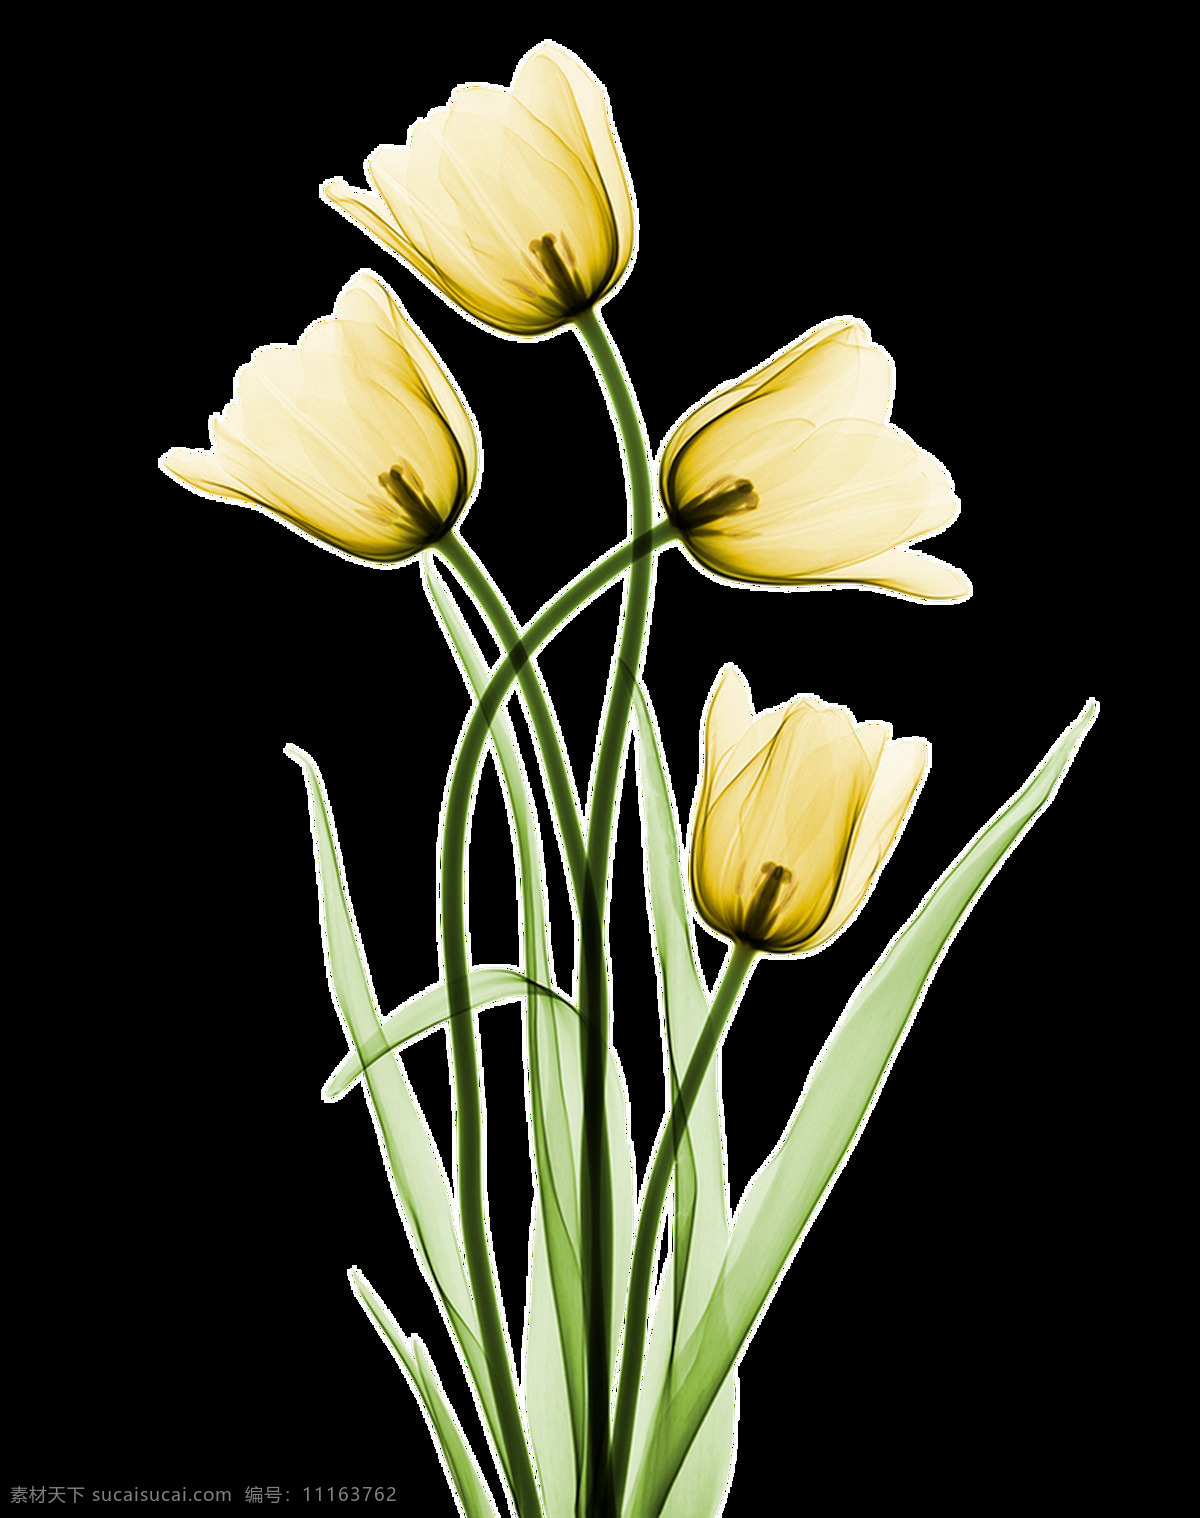 黄色 烂漫 花卉 卡通 透明 海报设计装饰 抠图专用 设计素材 淘宝素材 透明素材 装饰 装饰图案